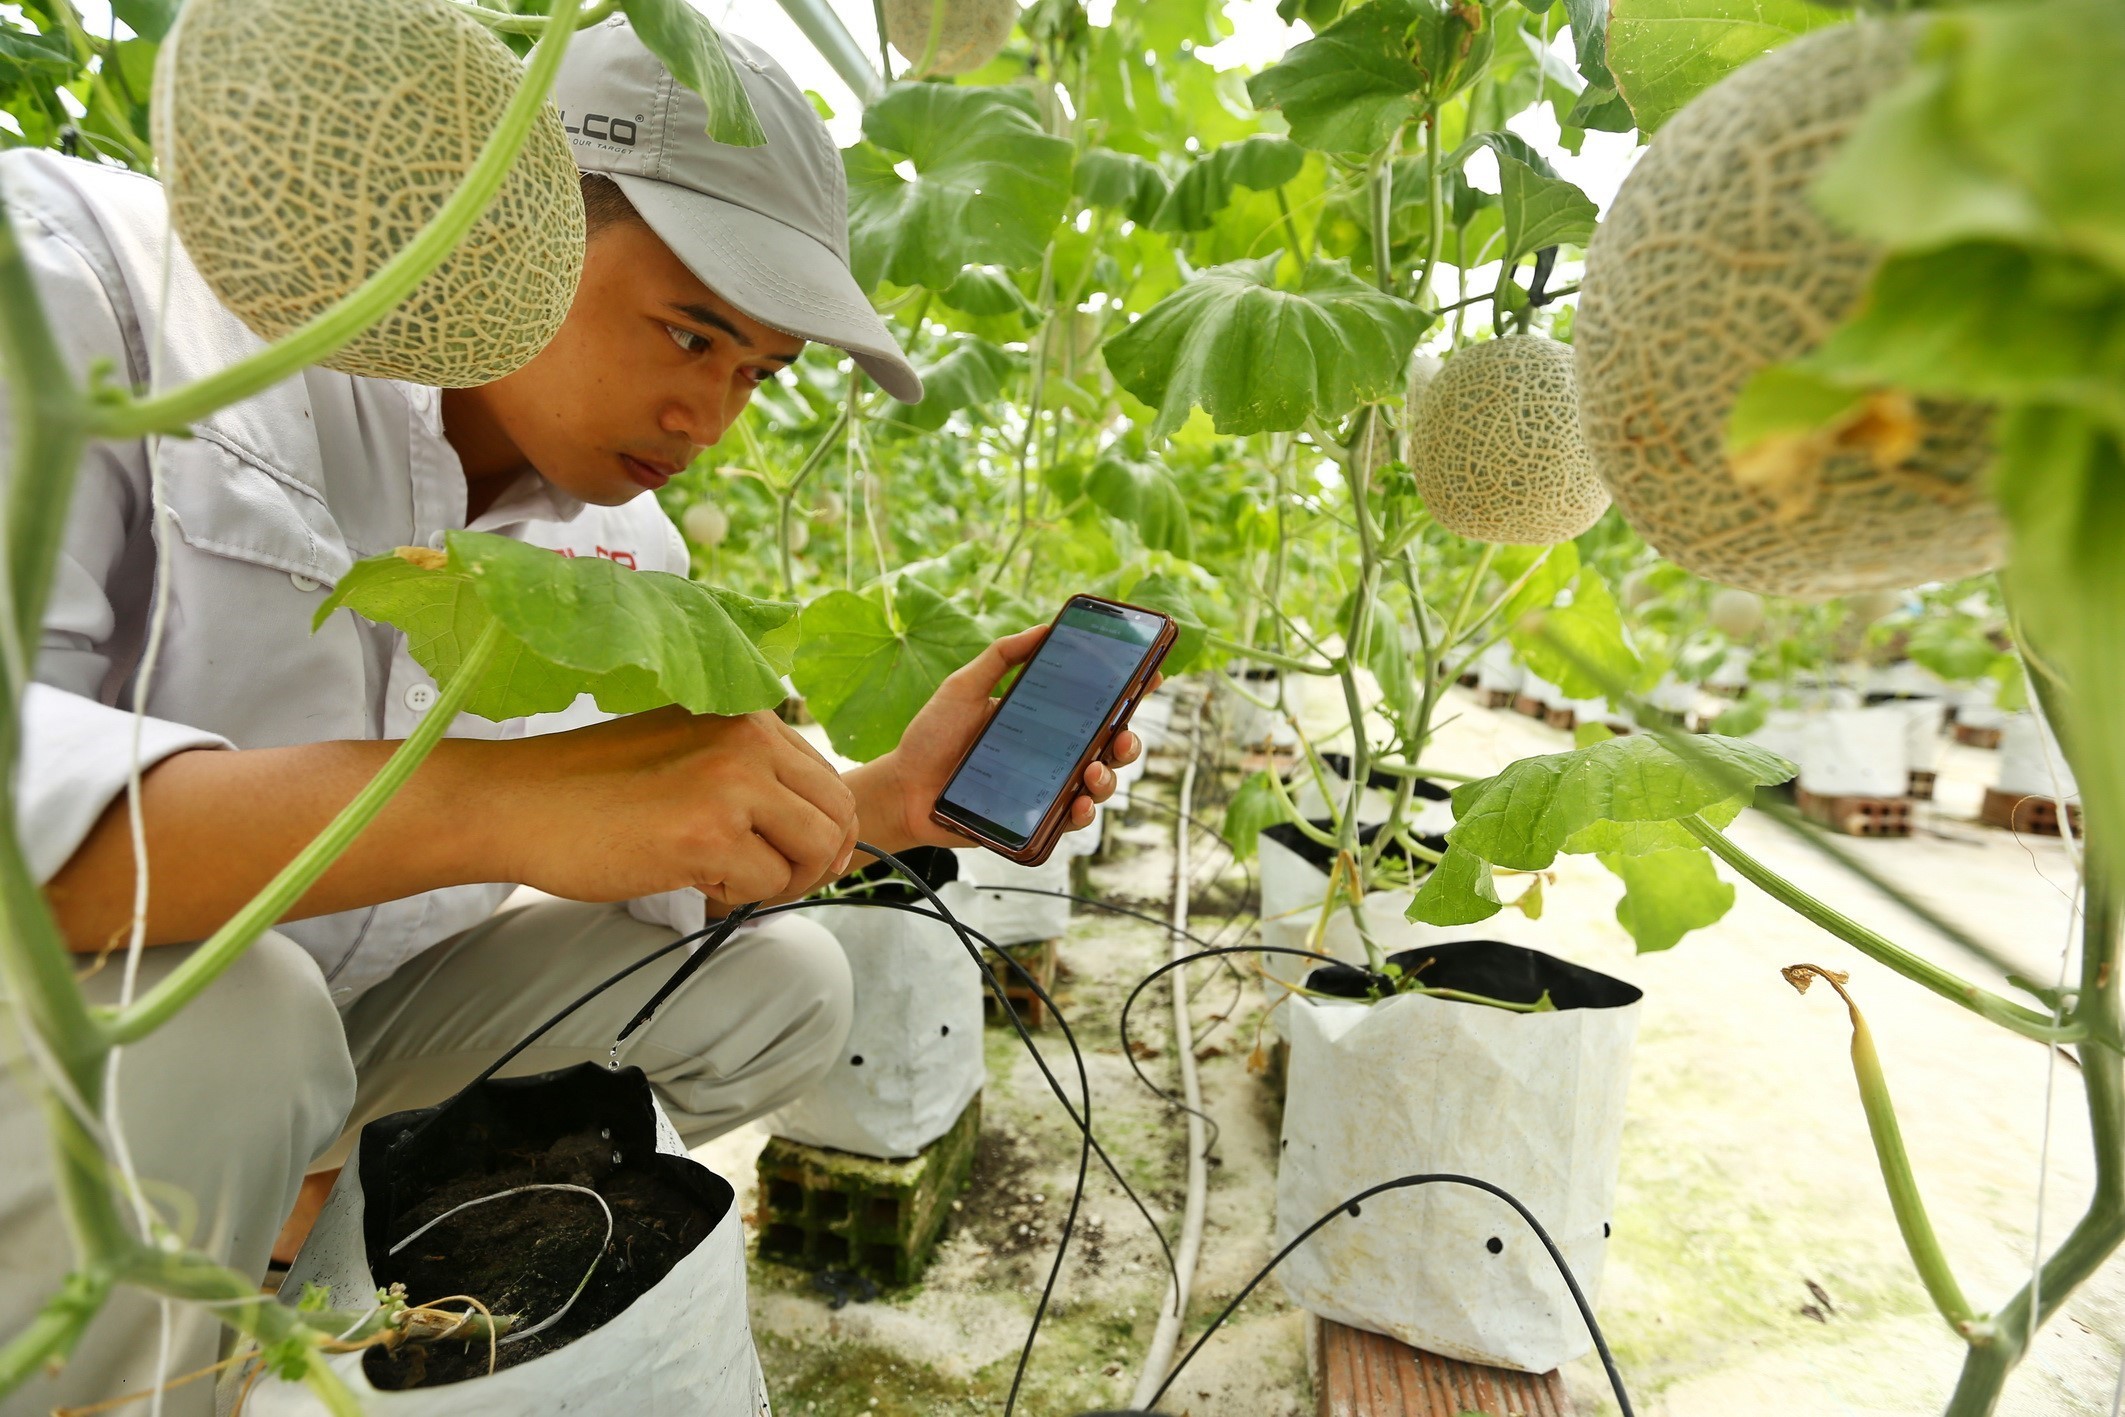 Kiểm tra hoạt động của hệ thống bơm tưới cho nhà dưa lưới khi điều khiển bằng ứng dụng trên điện thoại thông minh, tại mô hình trang trại thông minh Delco Farm (tại xã Nguyệt Đức, huyện Thuận Thành, Bắc Ninh). (Ảnh: Minh Quyết/TTXVN)